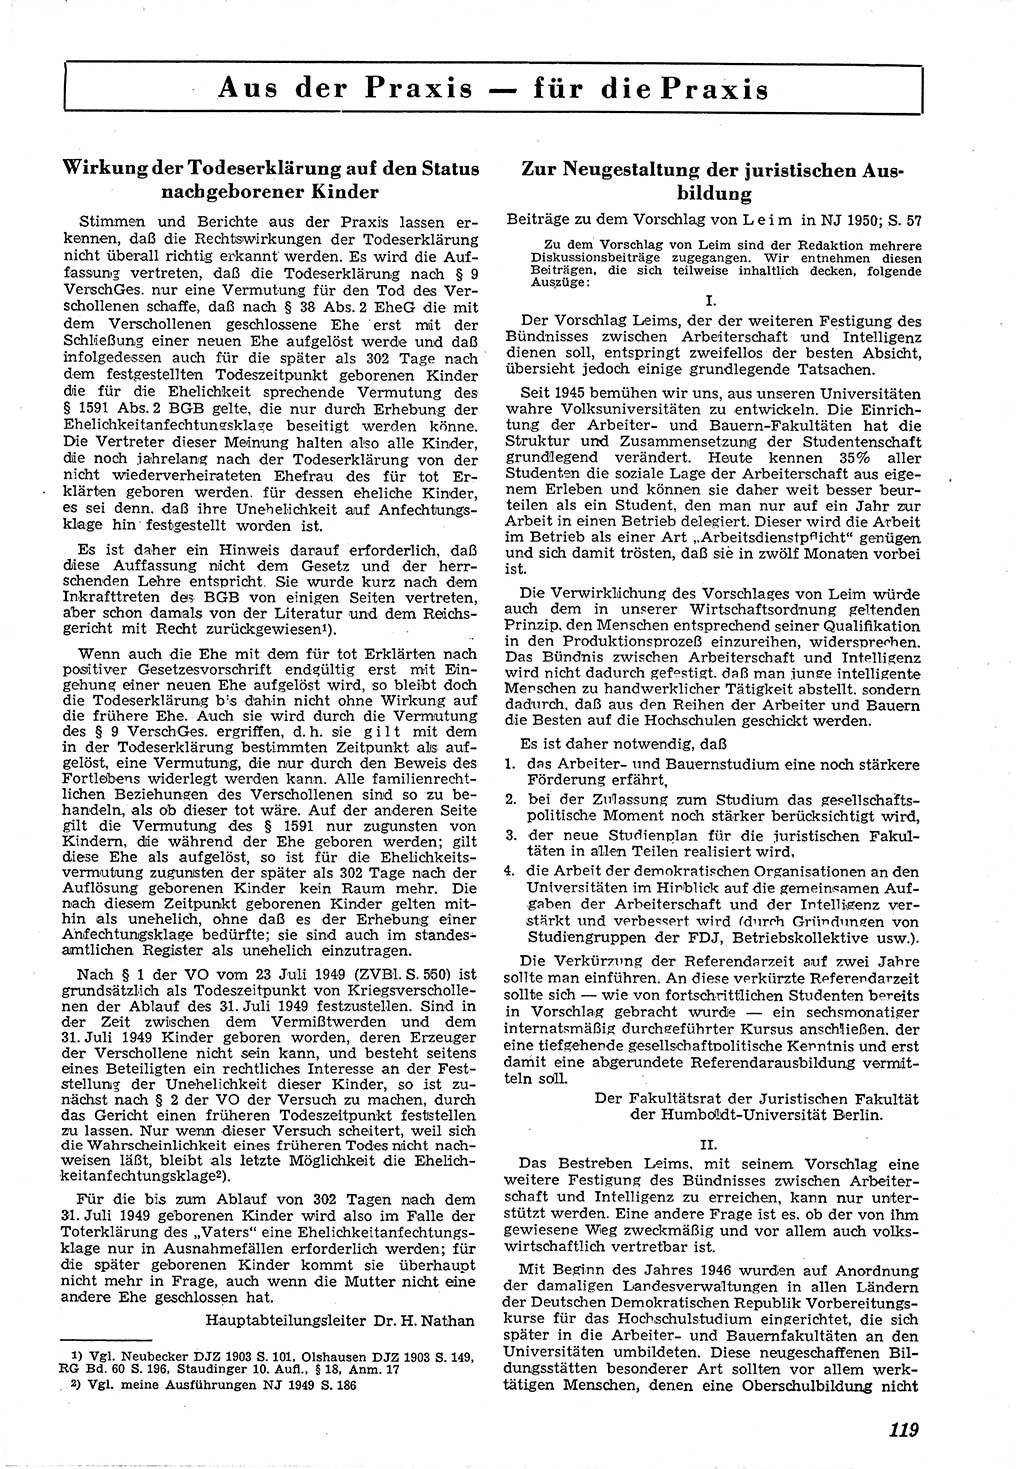 Neue Justiz (NJ), Zeitschrift für Recht und Rechtswissenschaft [Deutsche Demokratische Republik (DDR)], 4. Jahrgang 1950, Seite 119 (NJ DDR 1950, S. 119)